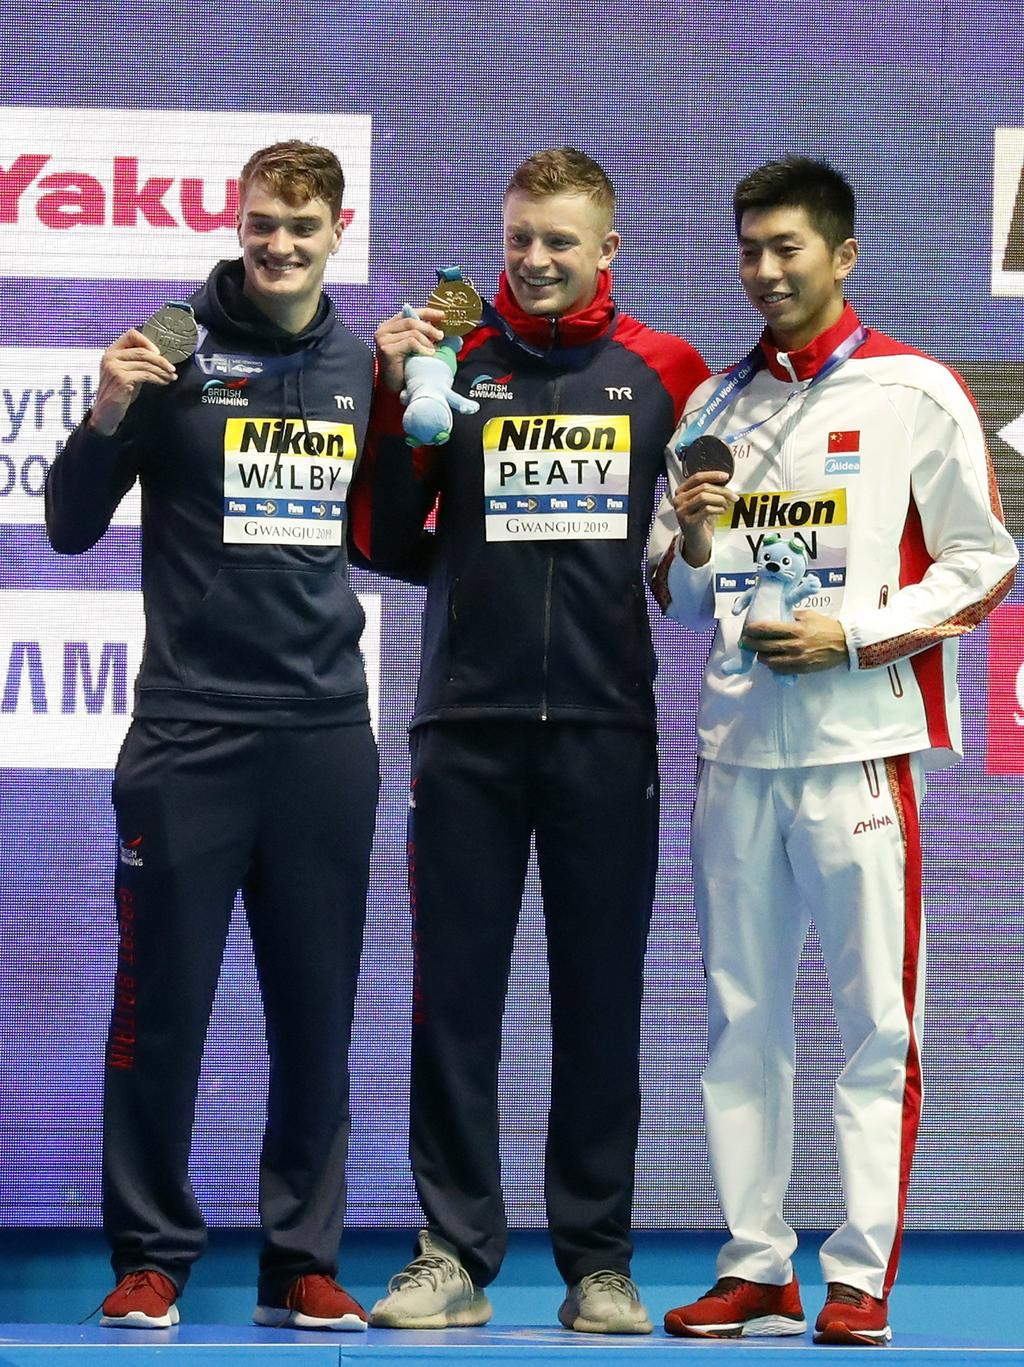 La medalla de plata correspondió a su compatriota James Wilby, al marcar 58.46 segundos, y el bronce al chino Zibei Yan, con 58.63. (EFE)